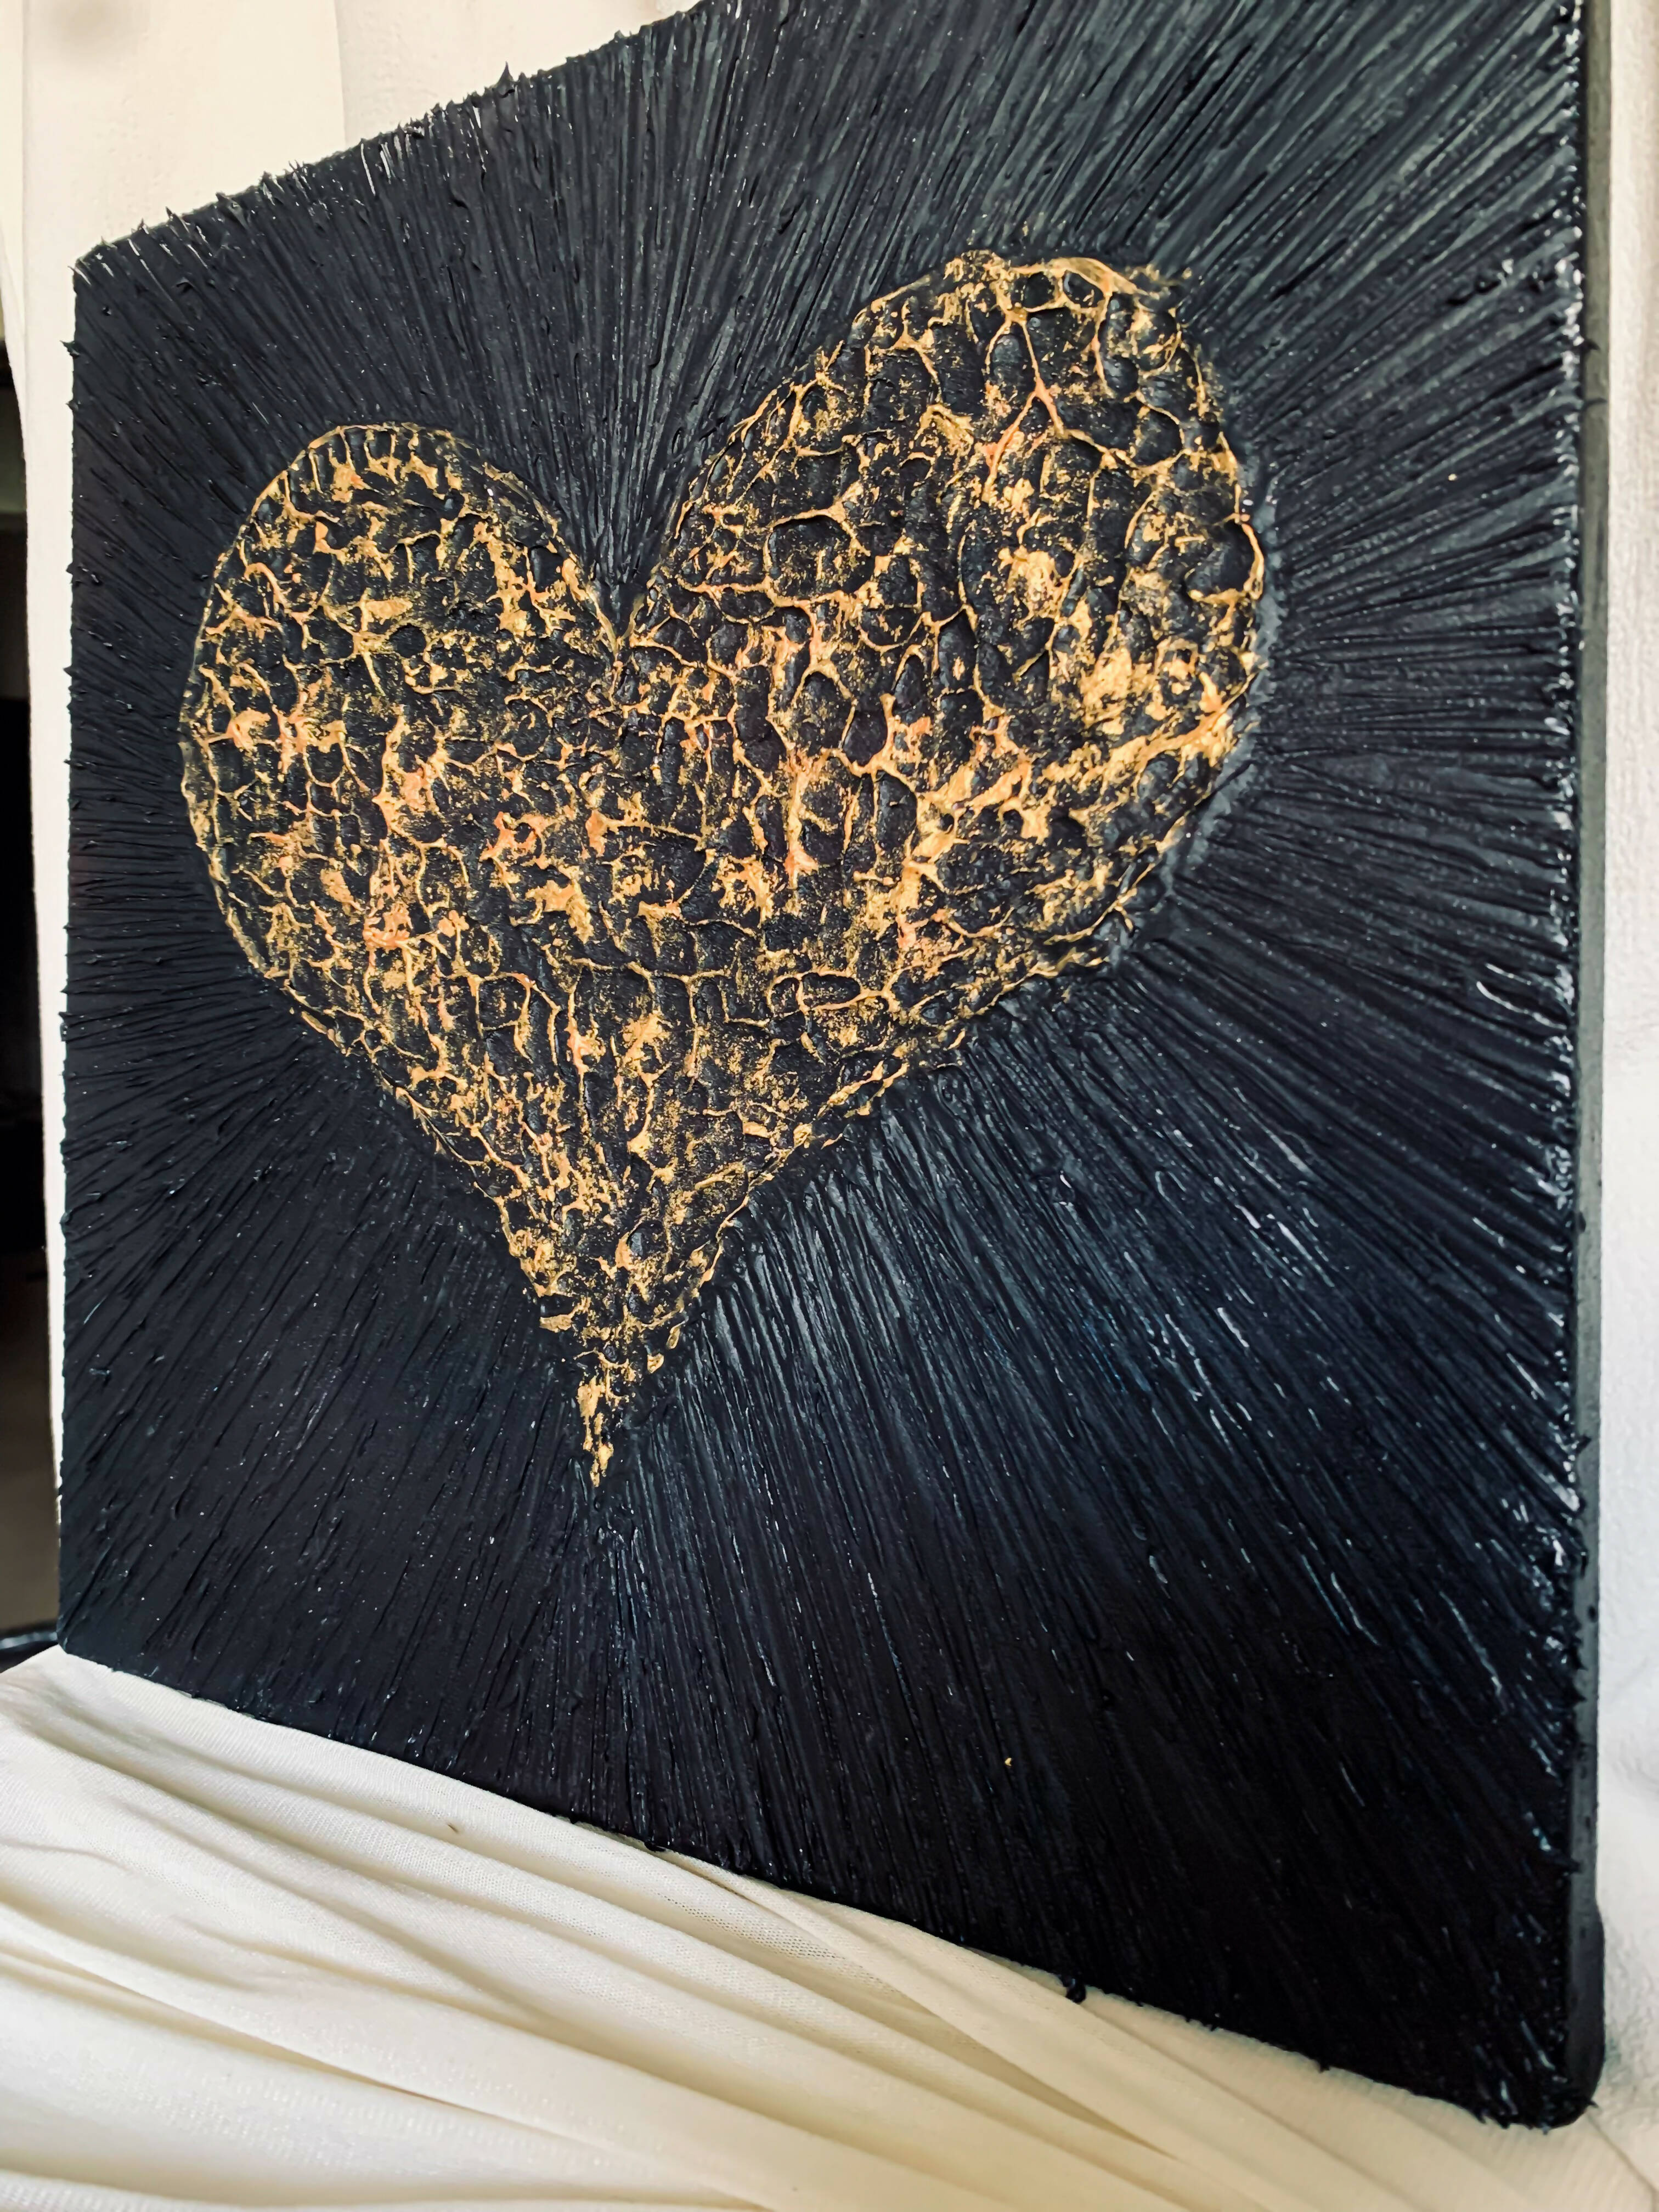 BLACK AND GOLDEN HEART TEXTURED ART